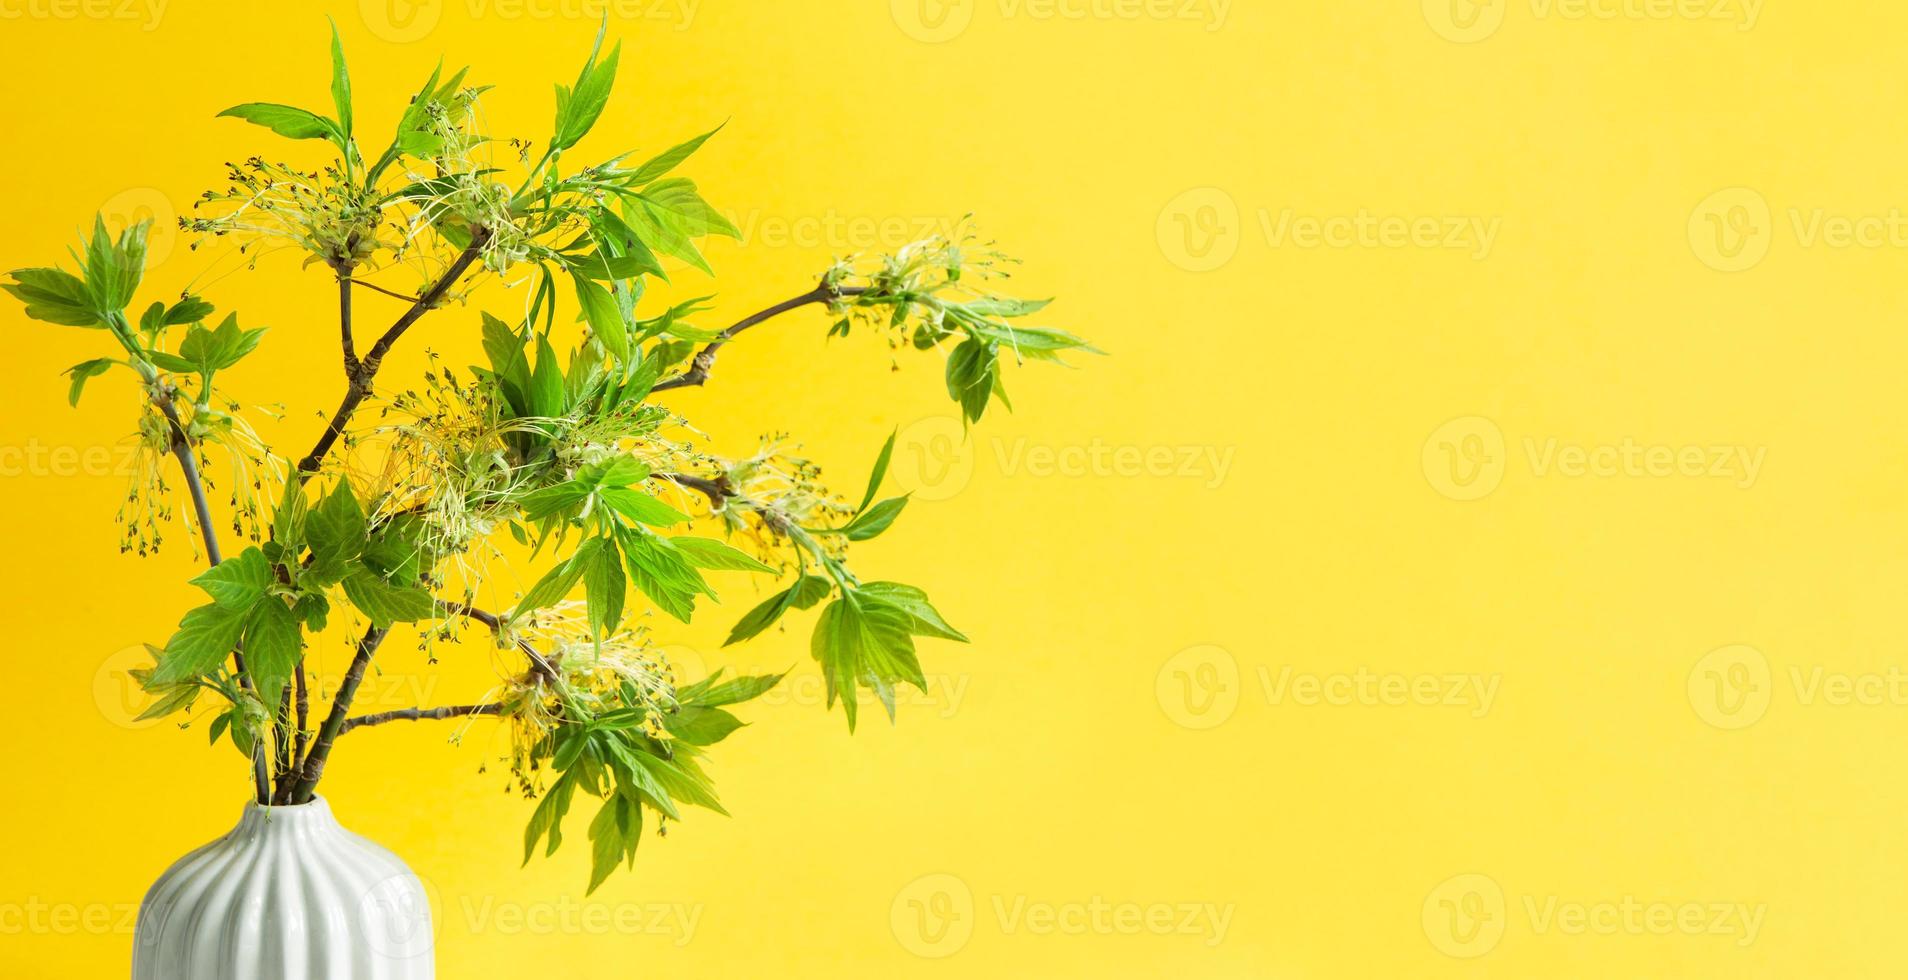 délicates petites feuilles de bourgeons ouverts sur des branches-pousses dans un vase sur fond jaune. printemps, le début d'une nouvelle vie. copie espace photo